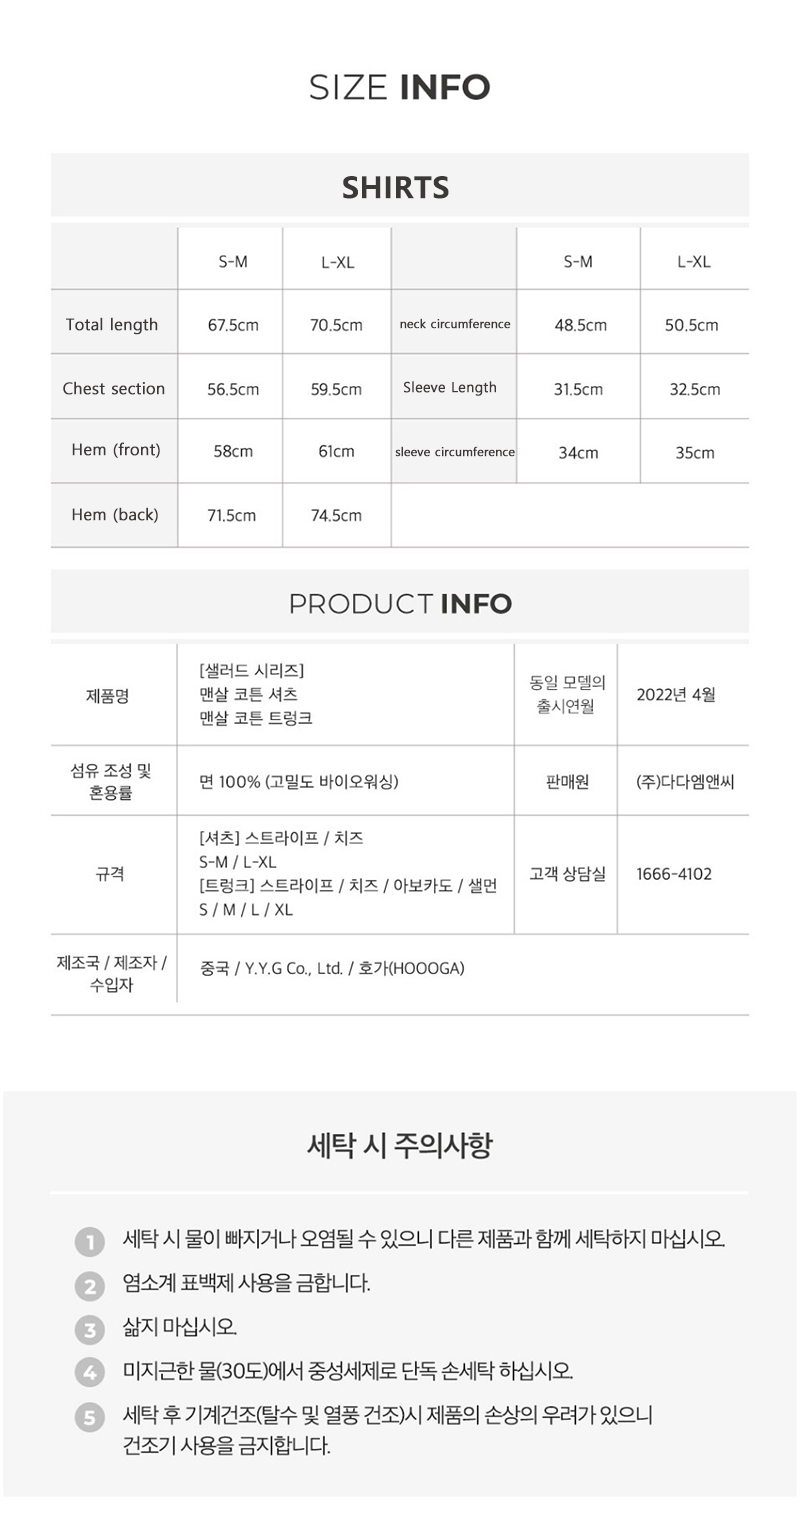 ktown4u.com : (Jung Eun Ji) Bare Skin Cotton Salad Shirt [2colors]